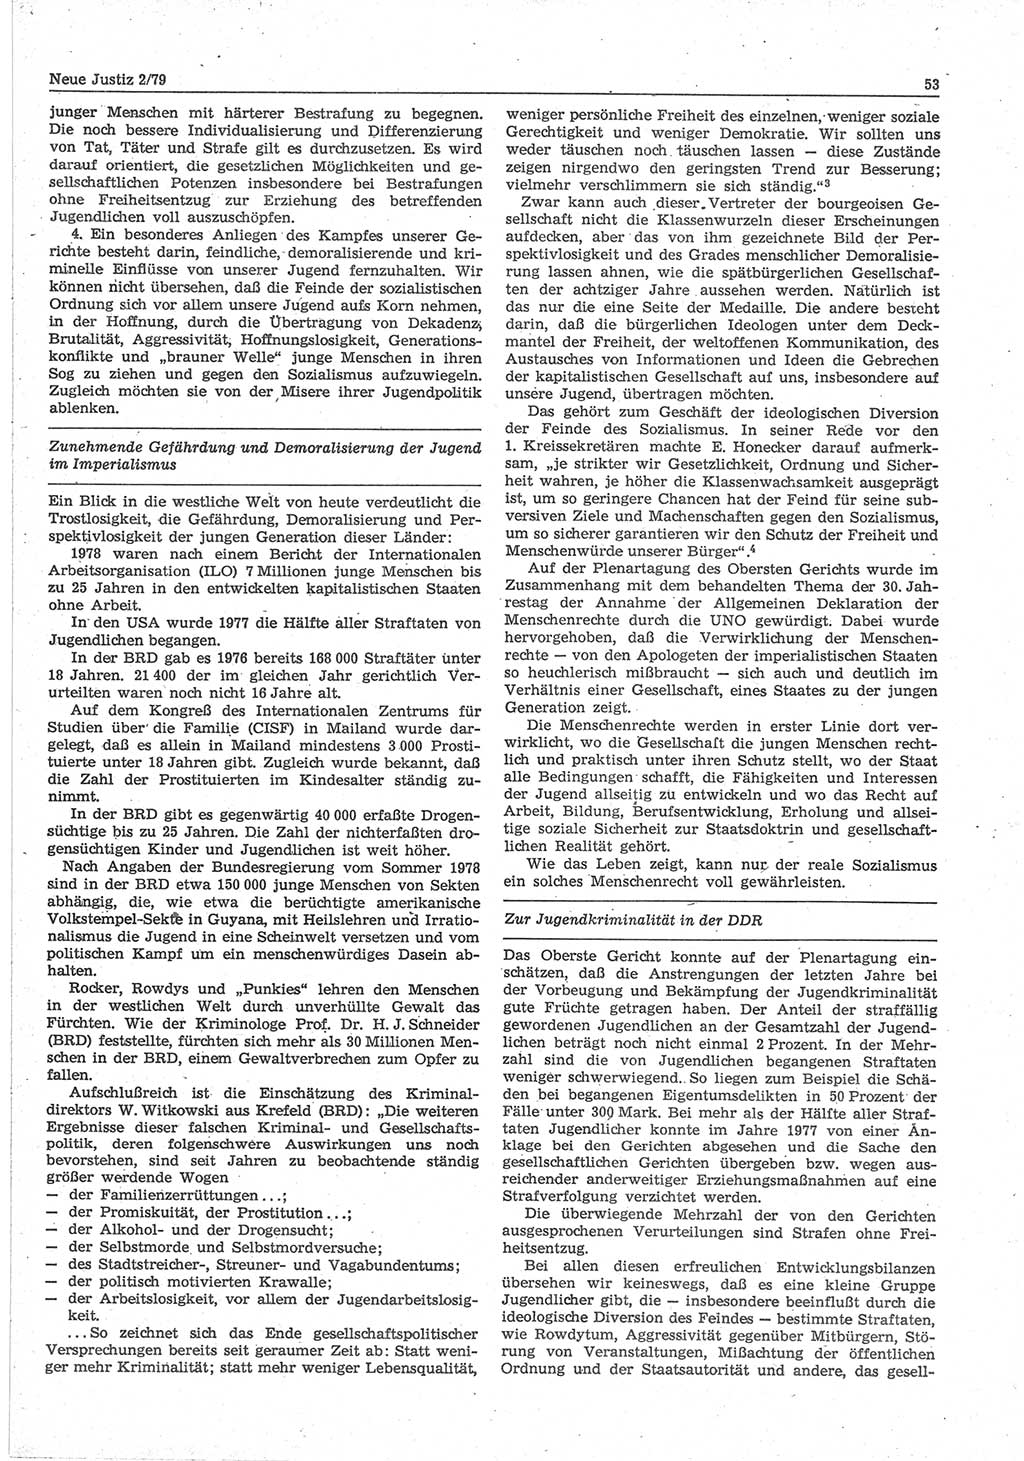 Neue Justiz (NJ), Zeitschrift für sozialistisches Recht und Gesetzlichkeit [Deutsche Demokratische Republik (DDR)], 33. Jahrgang 1979, Seite 53 (NJ DDR 1979, S. 53)